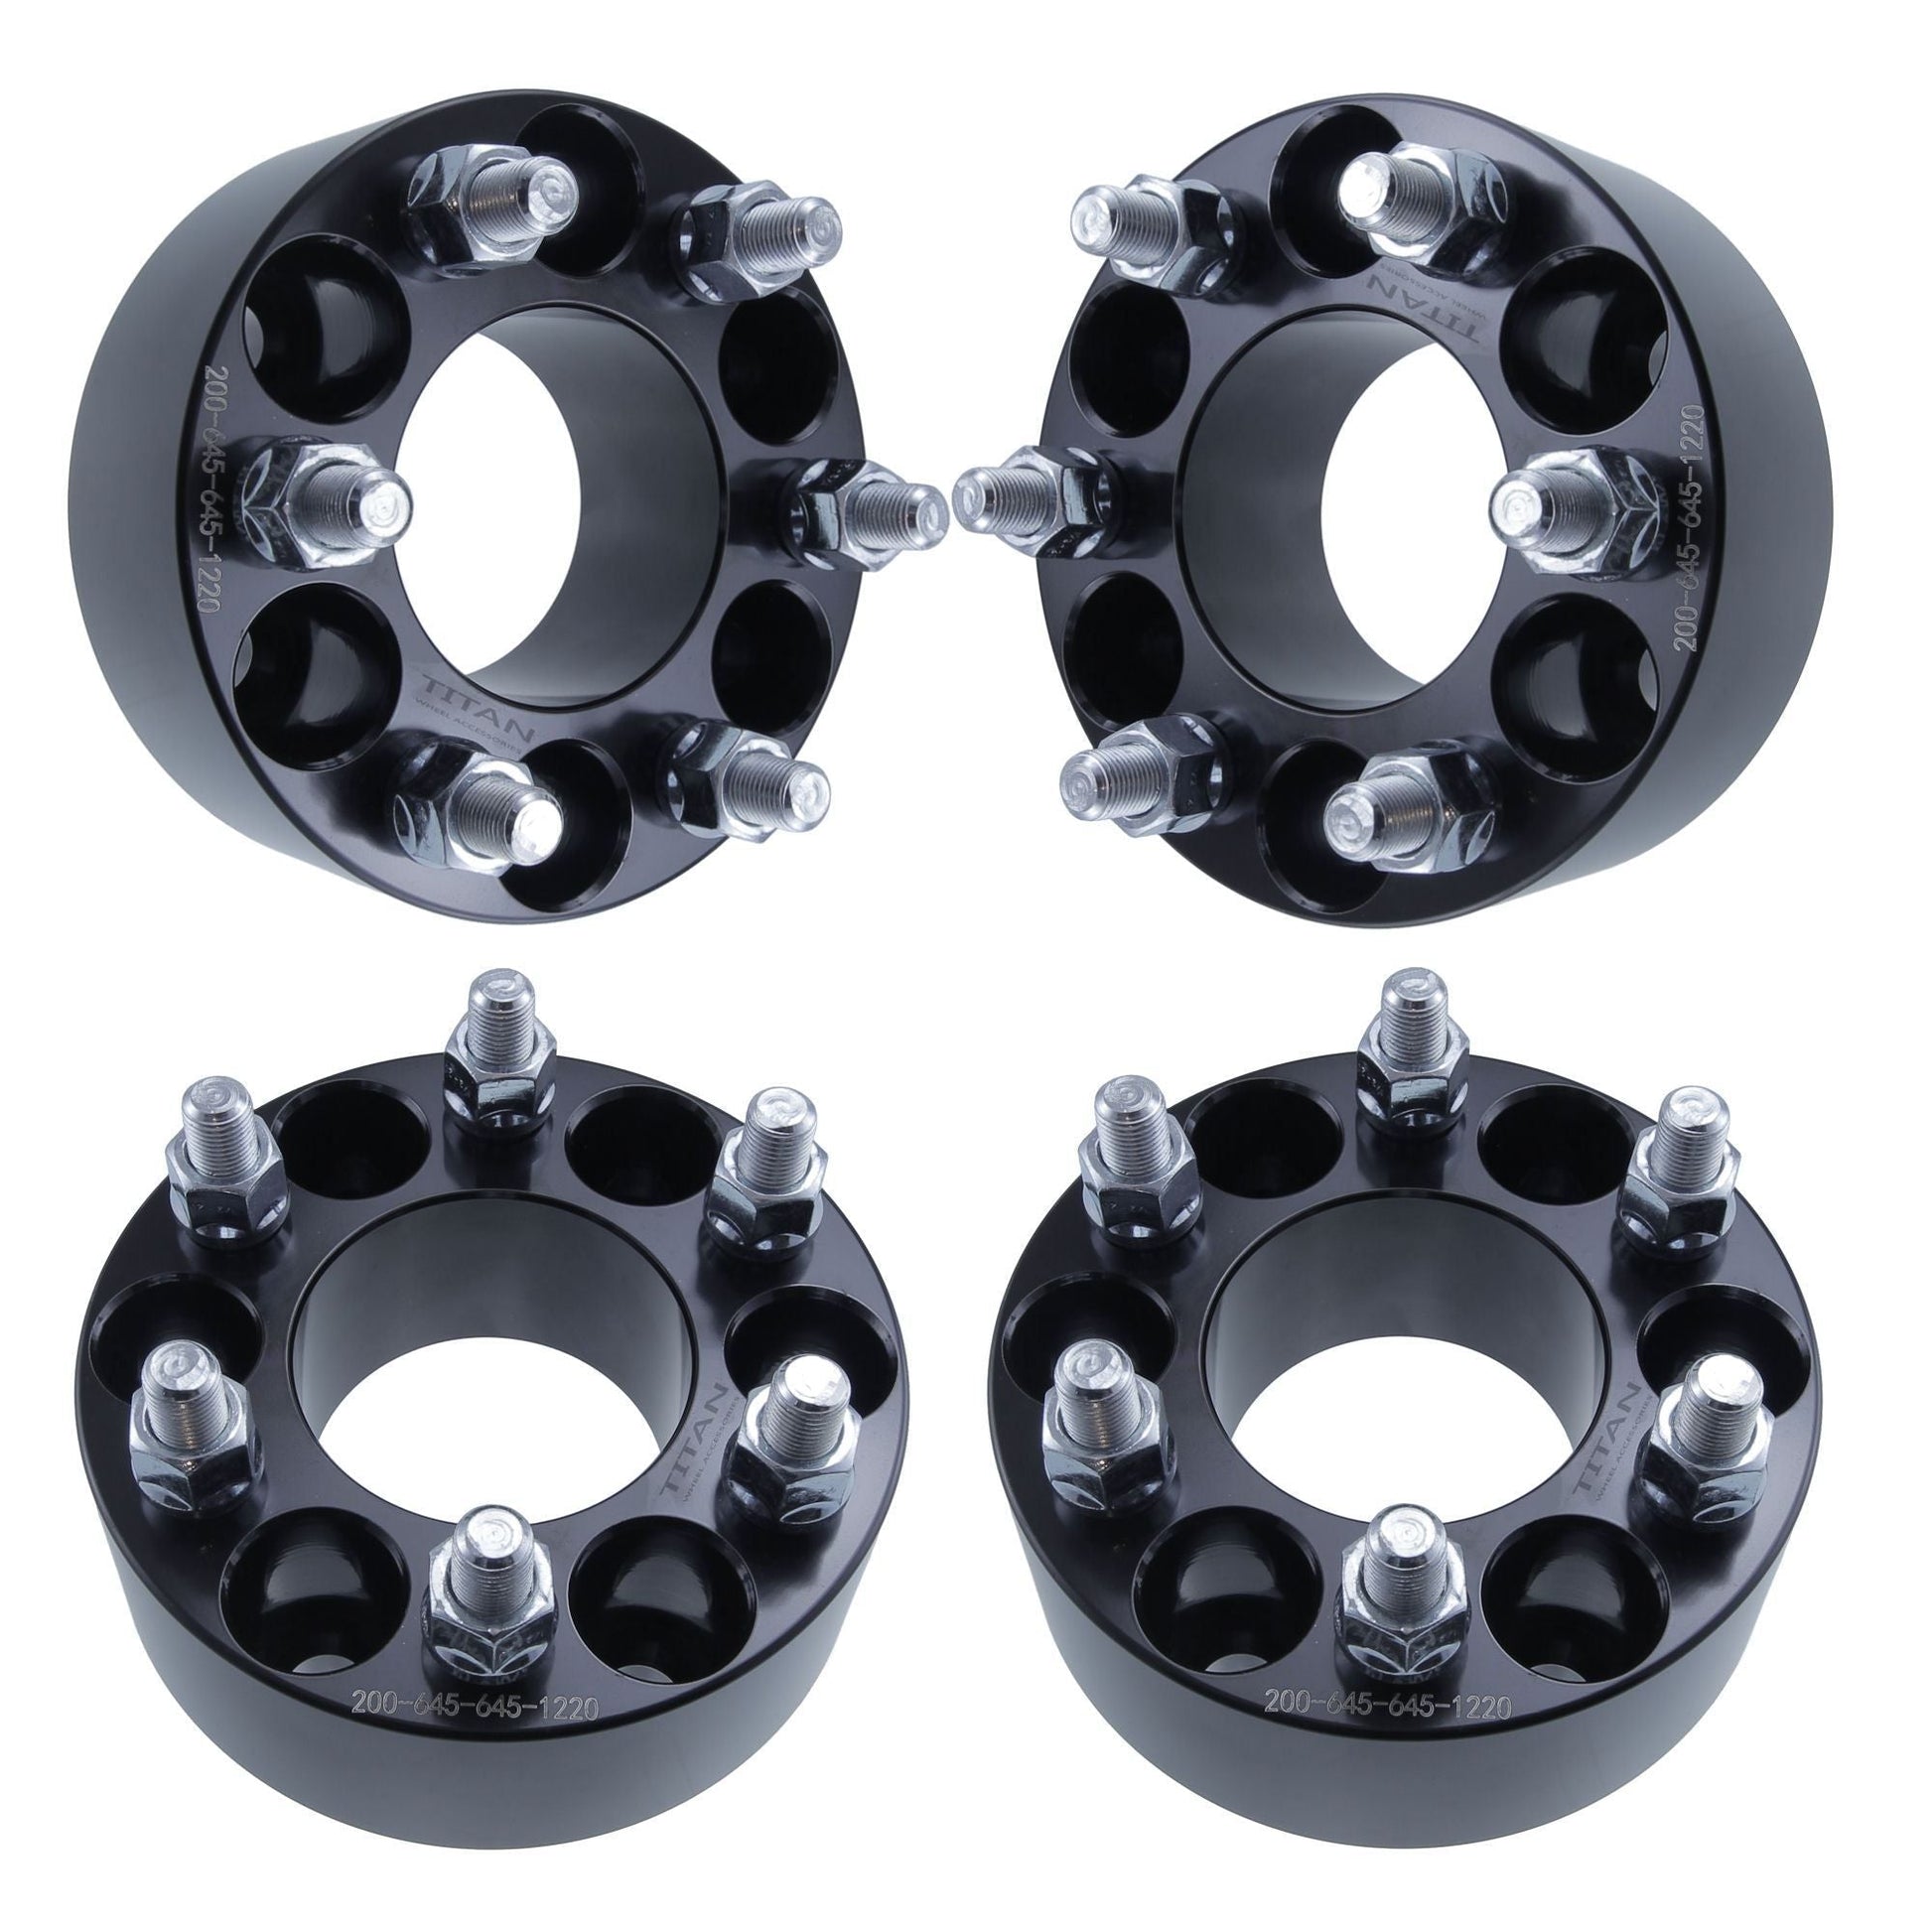 2" Titan Wheel Spacers for Dodge Viper Dakota Durango | 6x4.5 | 1/2x20 Studs | Set of 4 | Titan Wheel Accessories